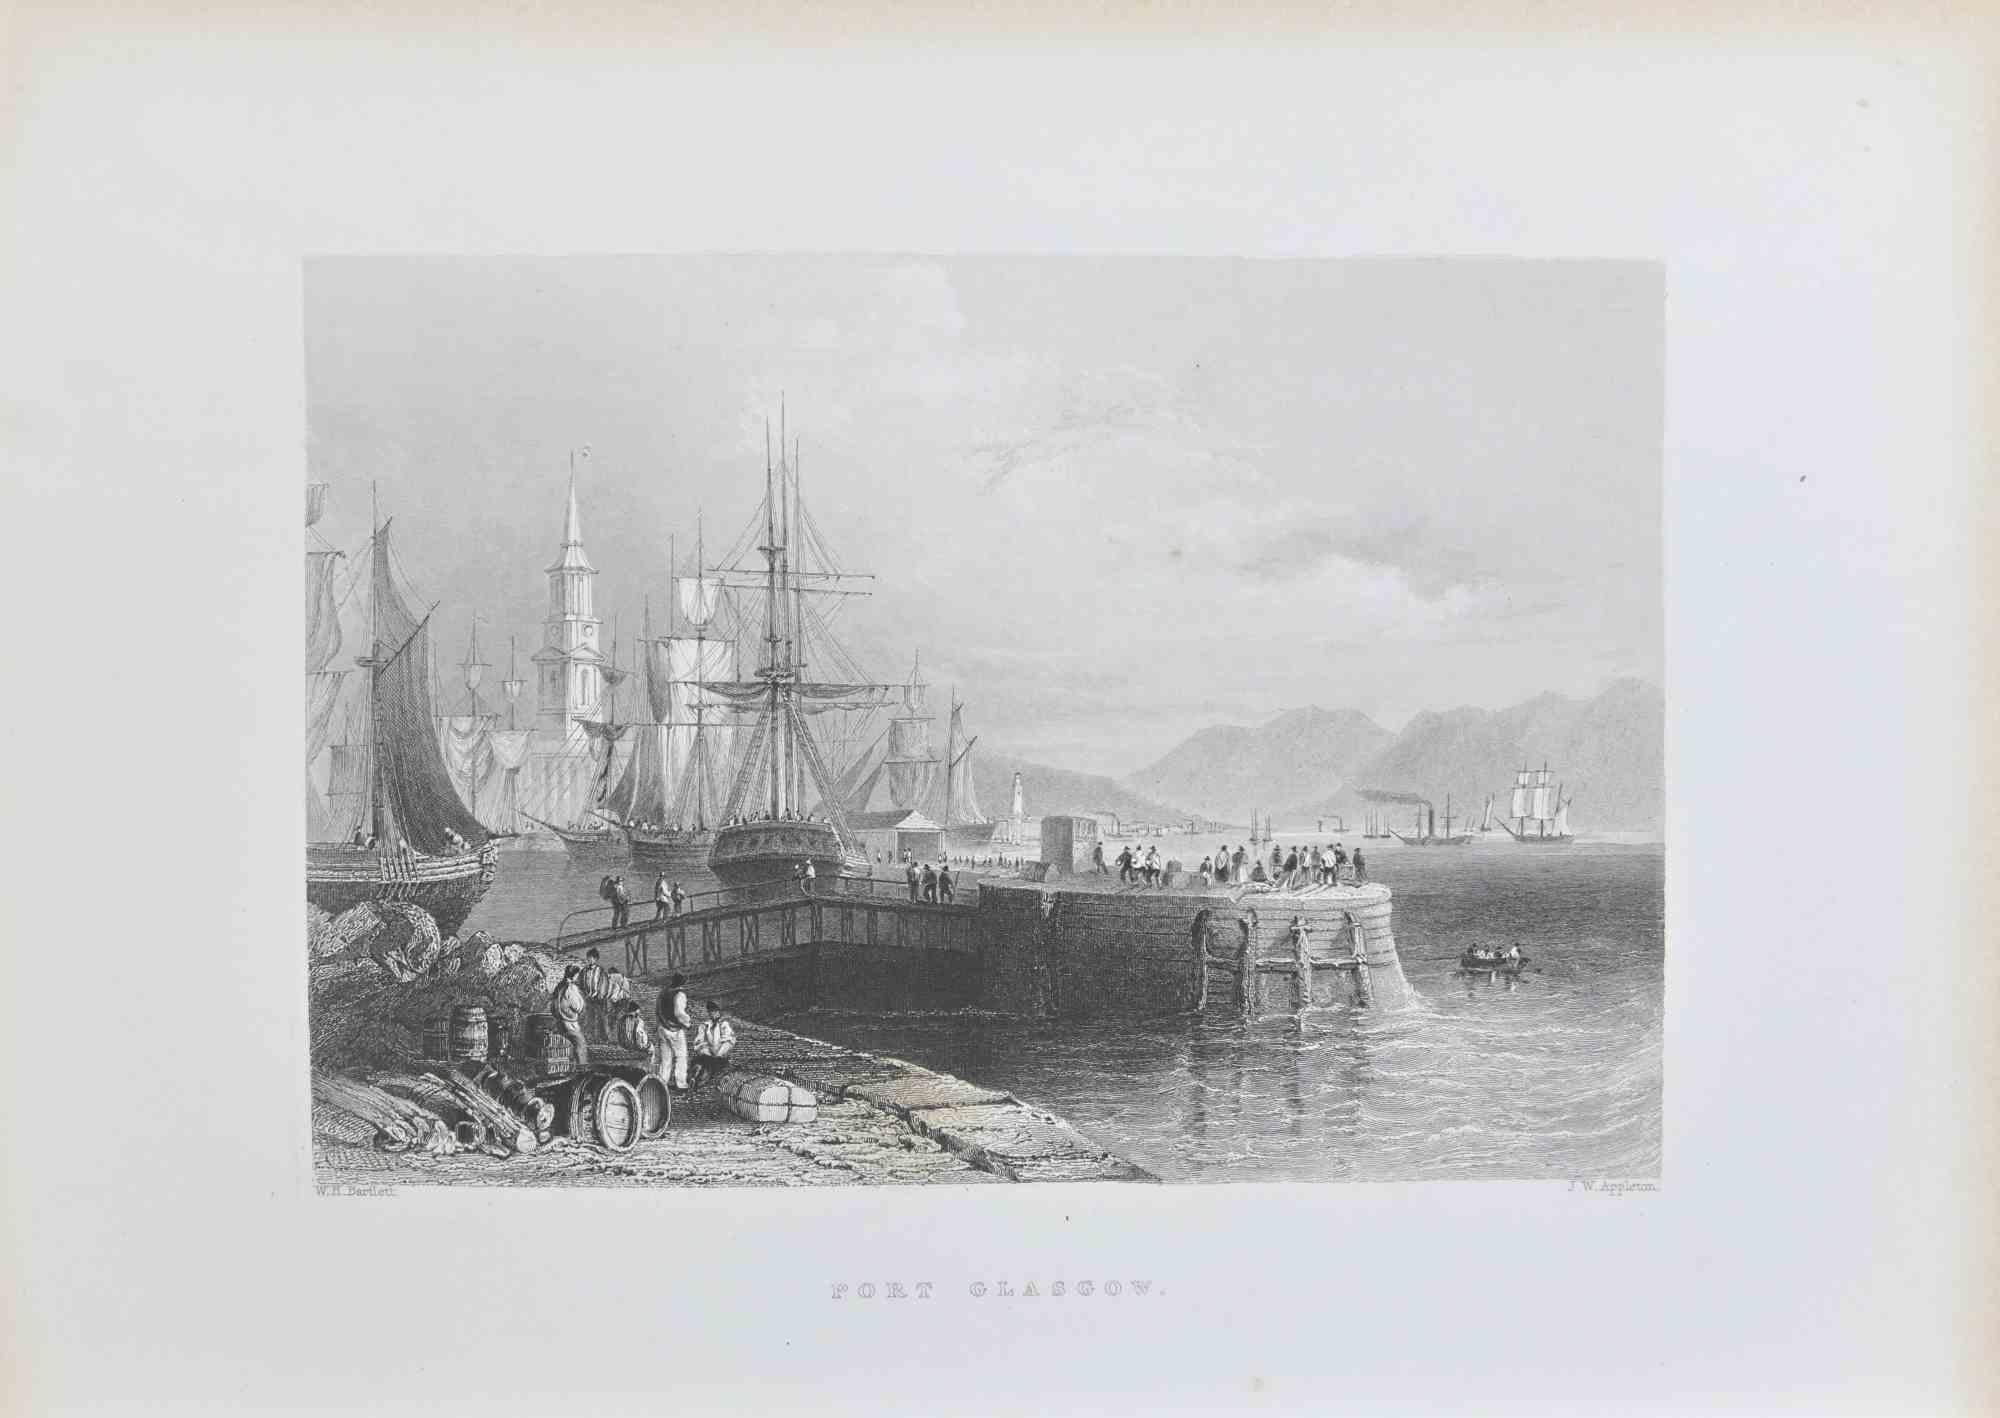 Port Glasgow ist eine Radierung aus dem Jahr 1845 von W. H. Bartlett.

Signiert auf der Platte. 

Unten in der Mitte betitelt, aus der Serie der "Ports of Great Britain". 

Guter Zustand mit leichten Stockflecken.

Das Kunstwerk ist in einer